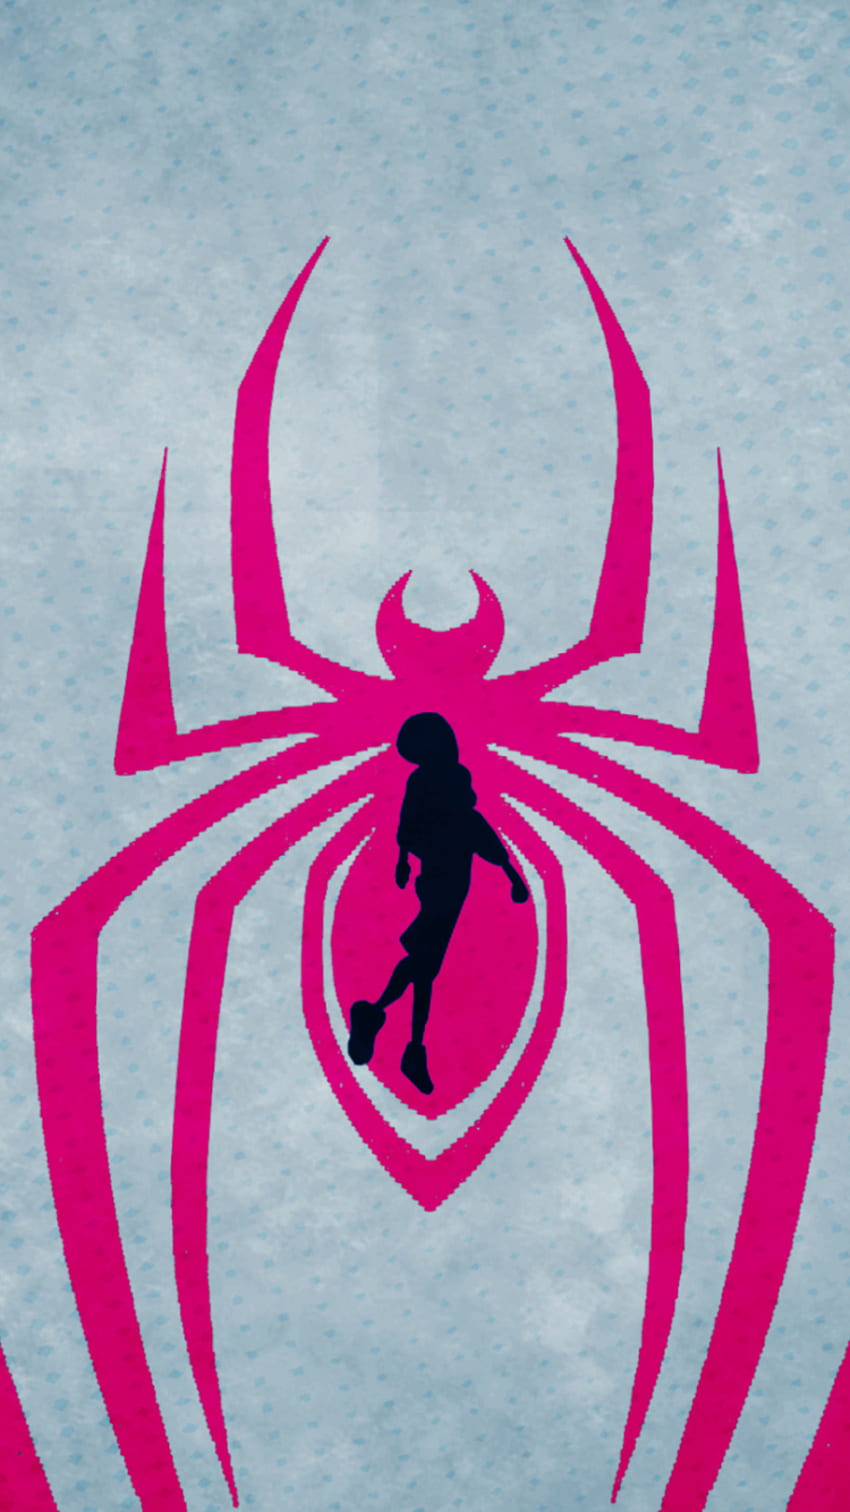 720P Free download | Movie Spider Man: Into The Spider Verse, Pink ...